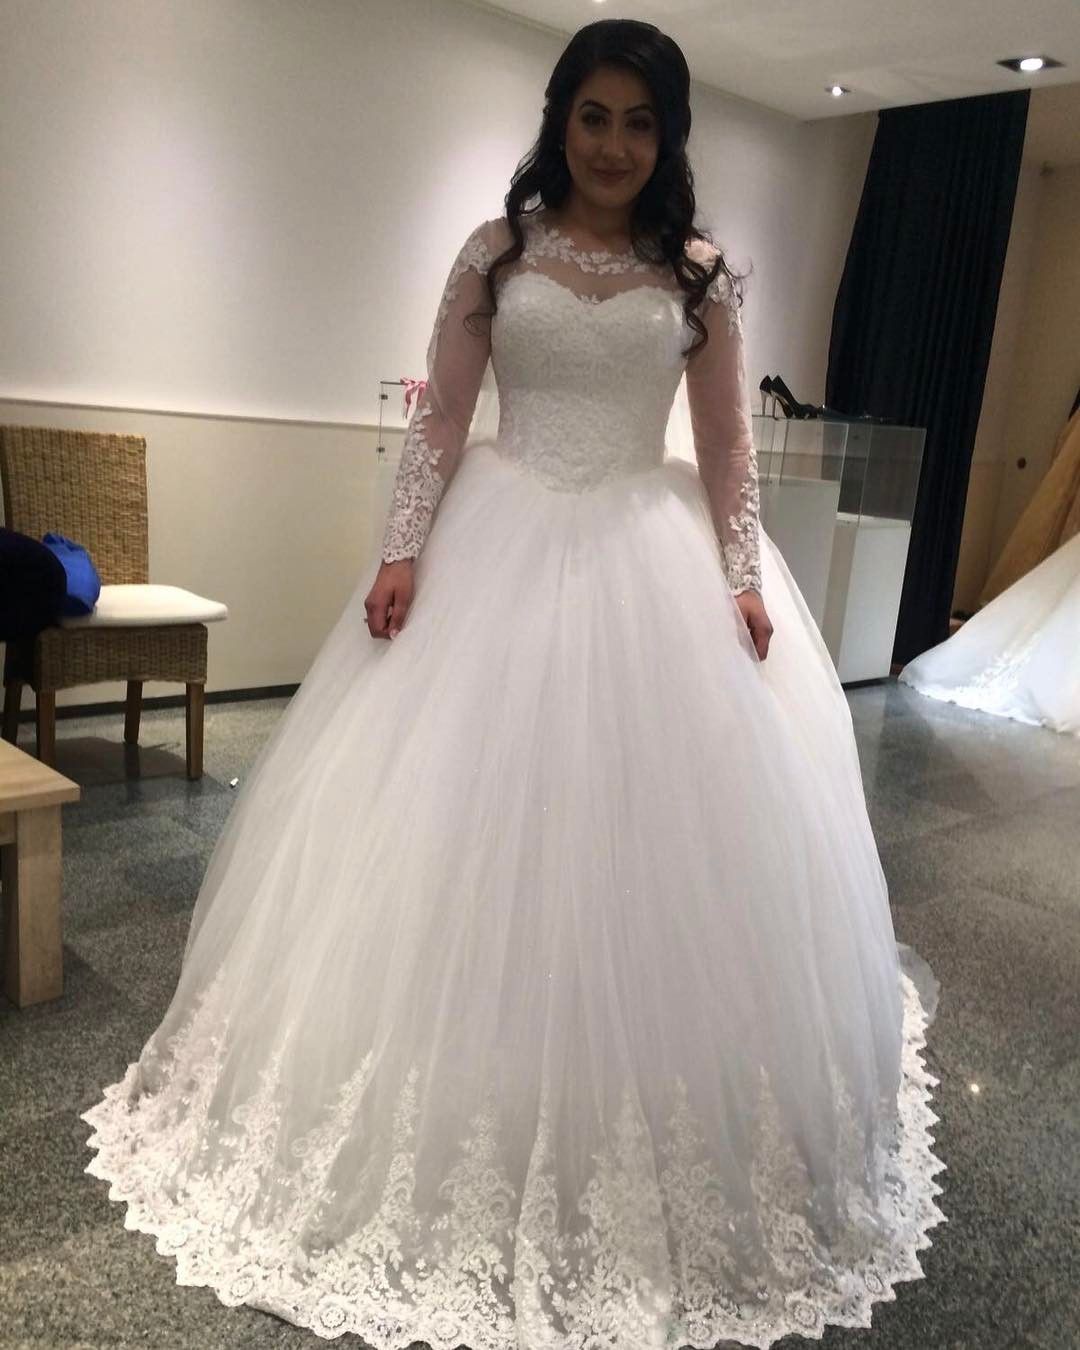 bride dress princess